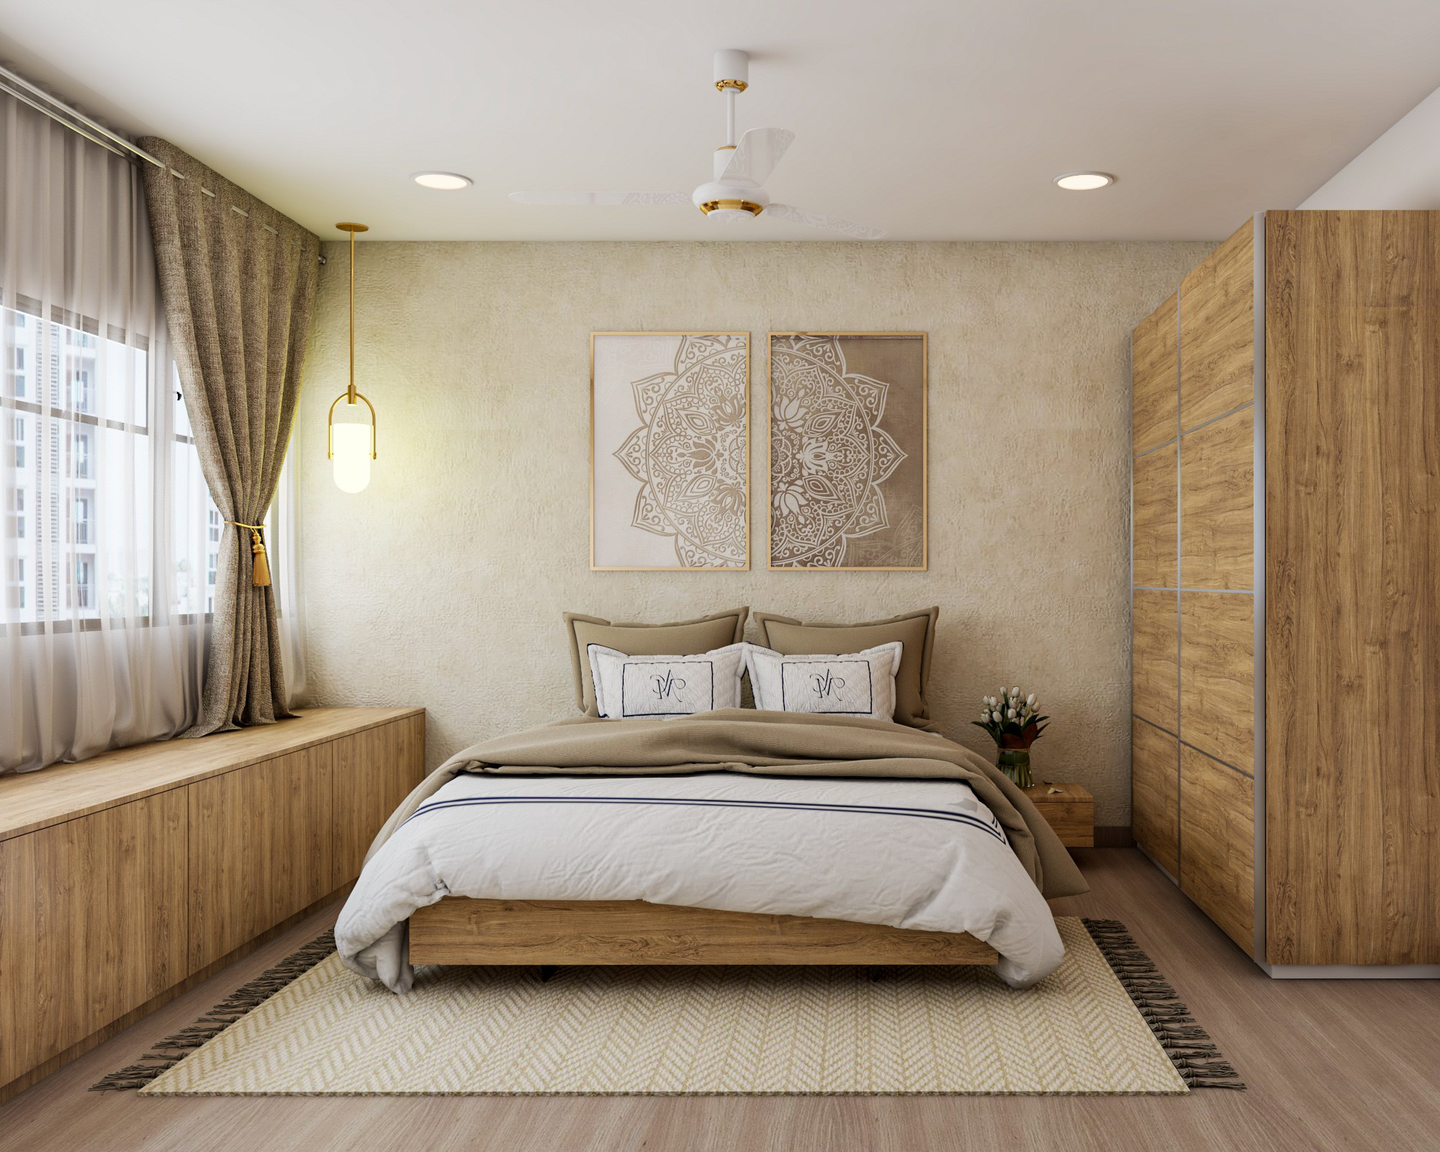 Scandinavian Bedroom with Wooden Elements - Livspace